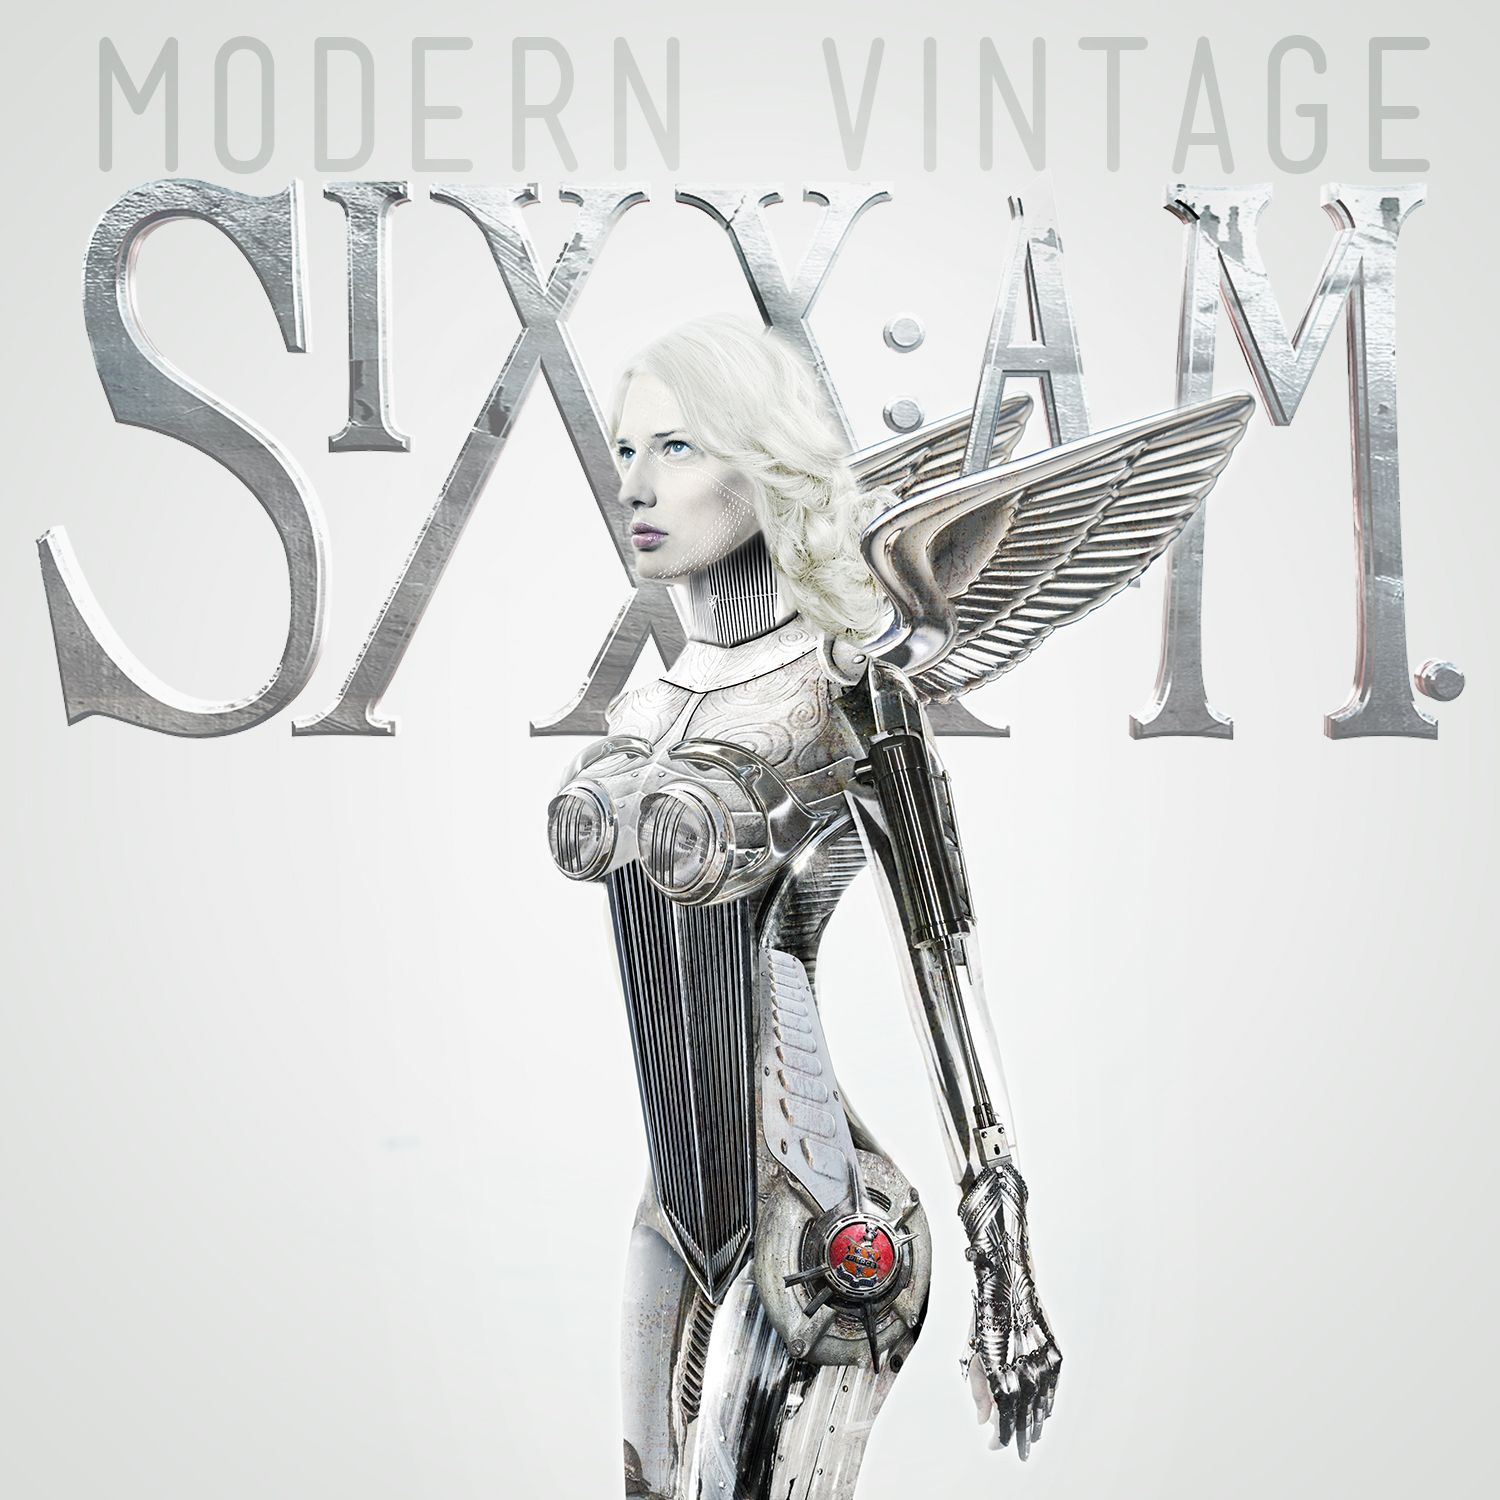 sixx_a_m_modern_vintage_2014.jpg